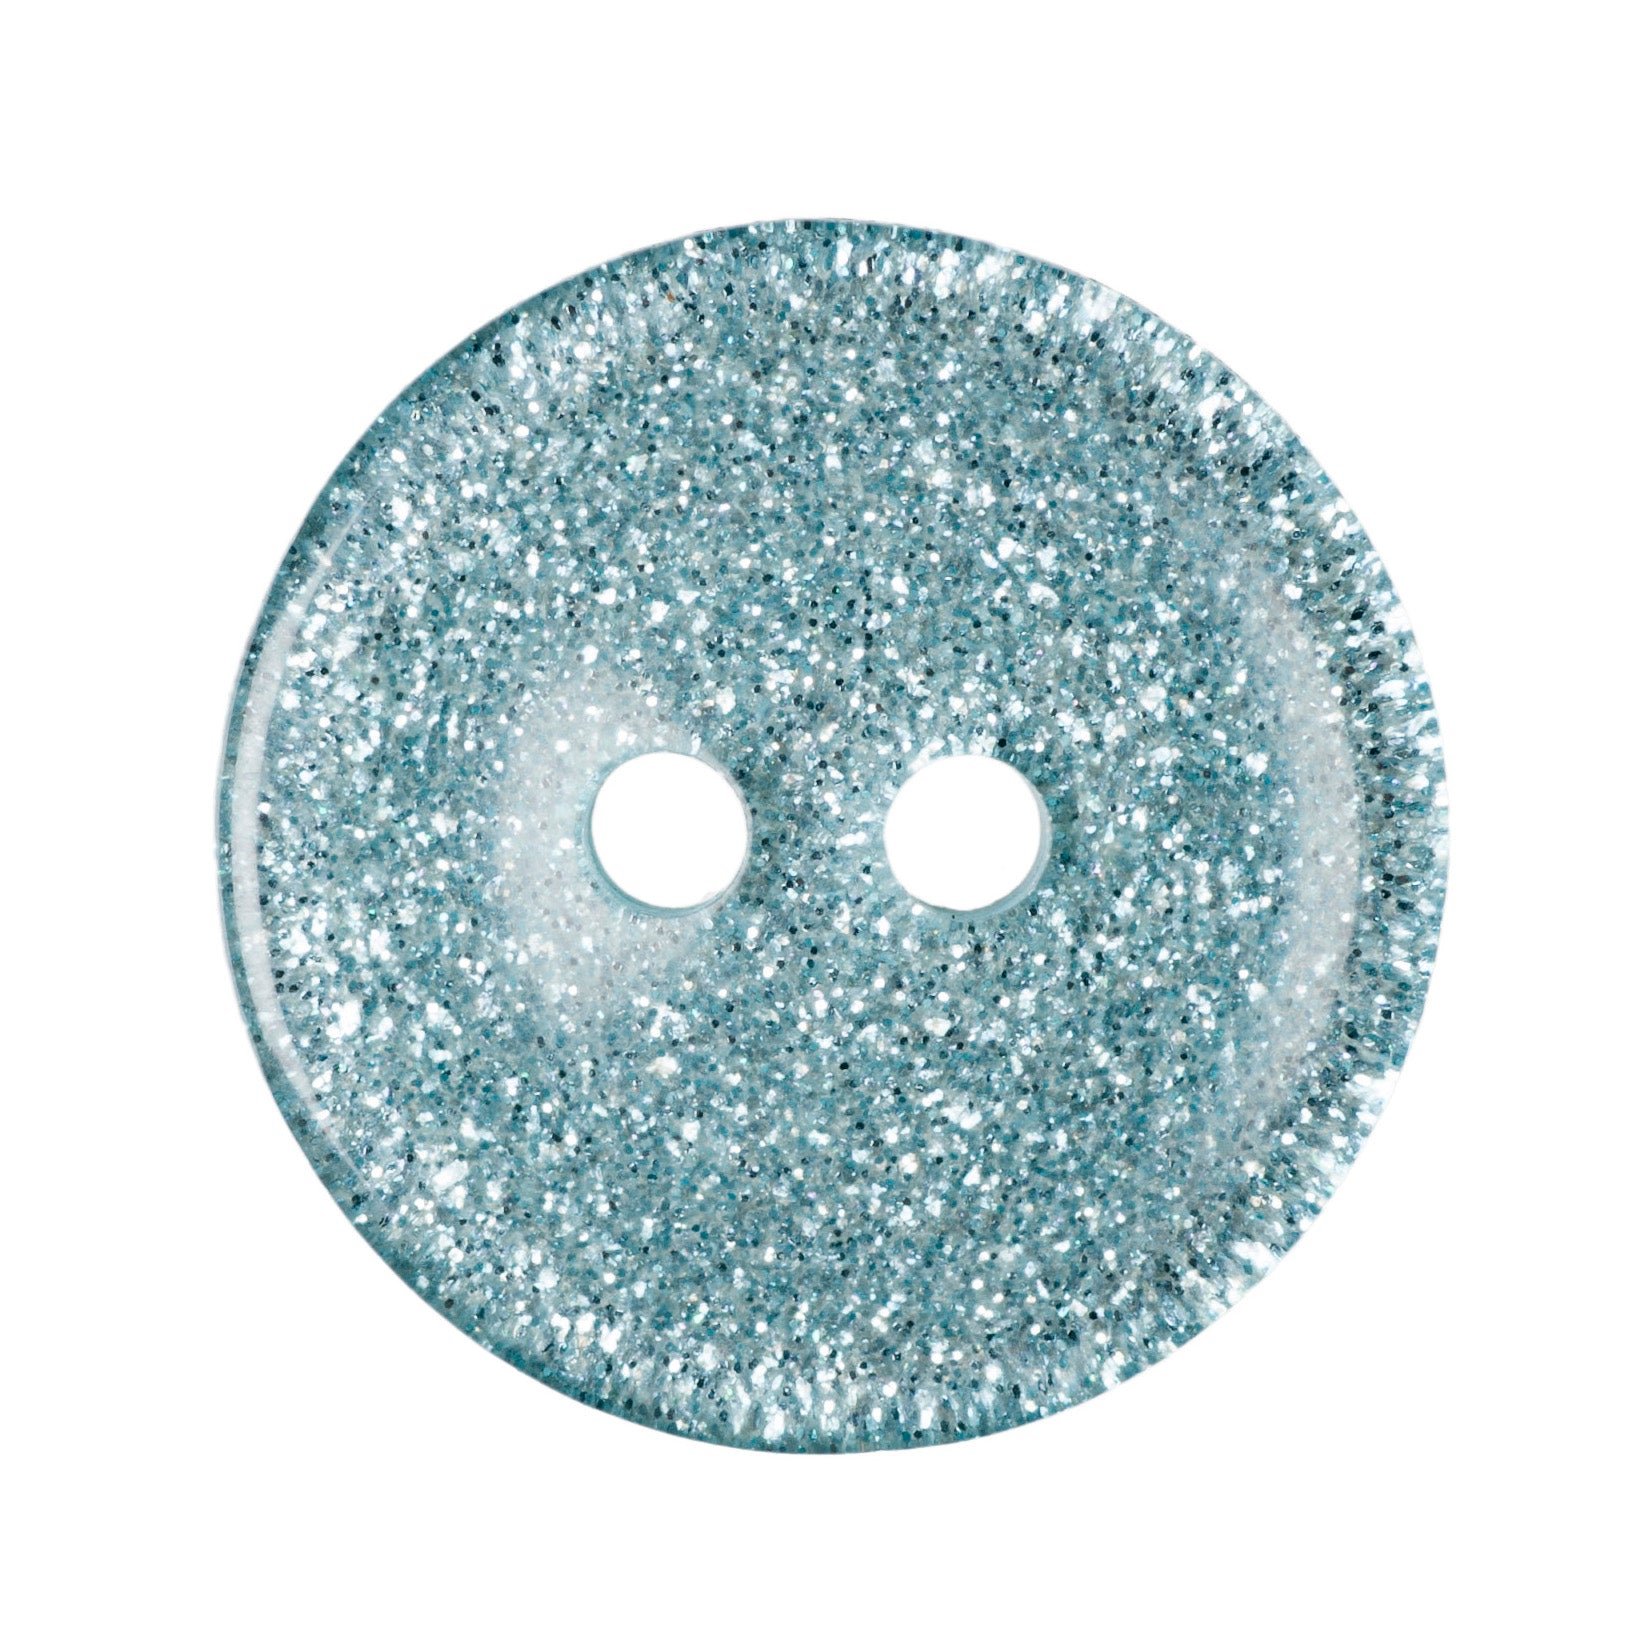 Round Glitter Button - 15mm